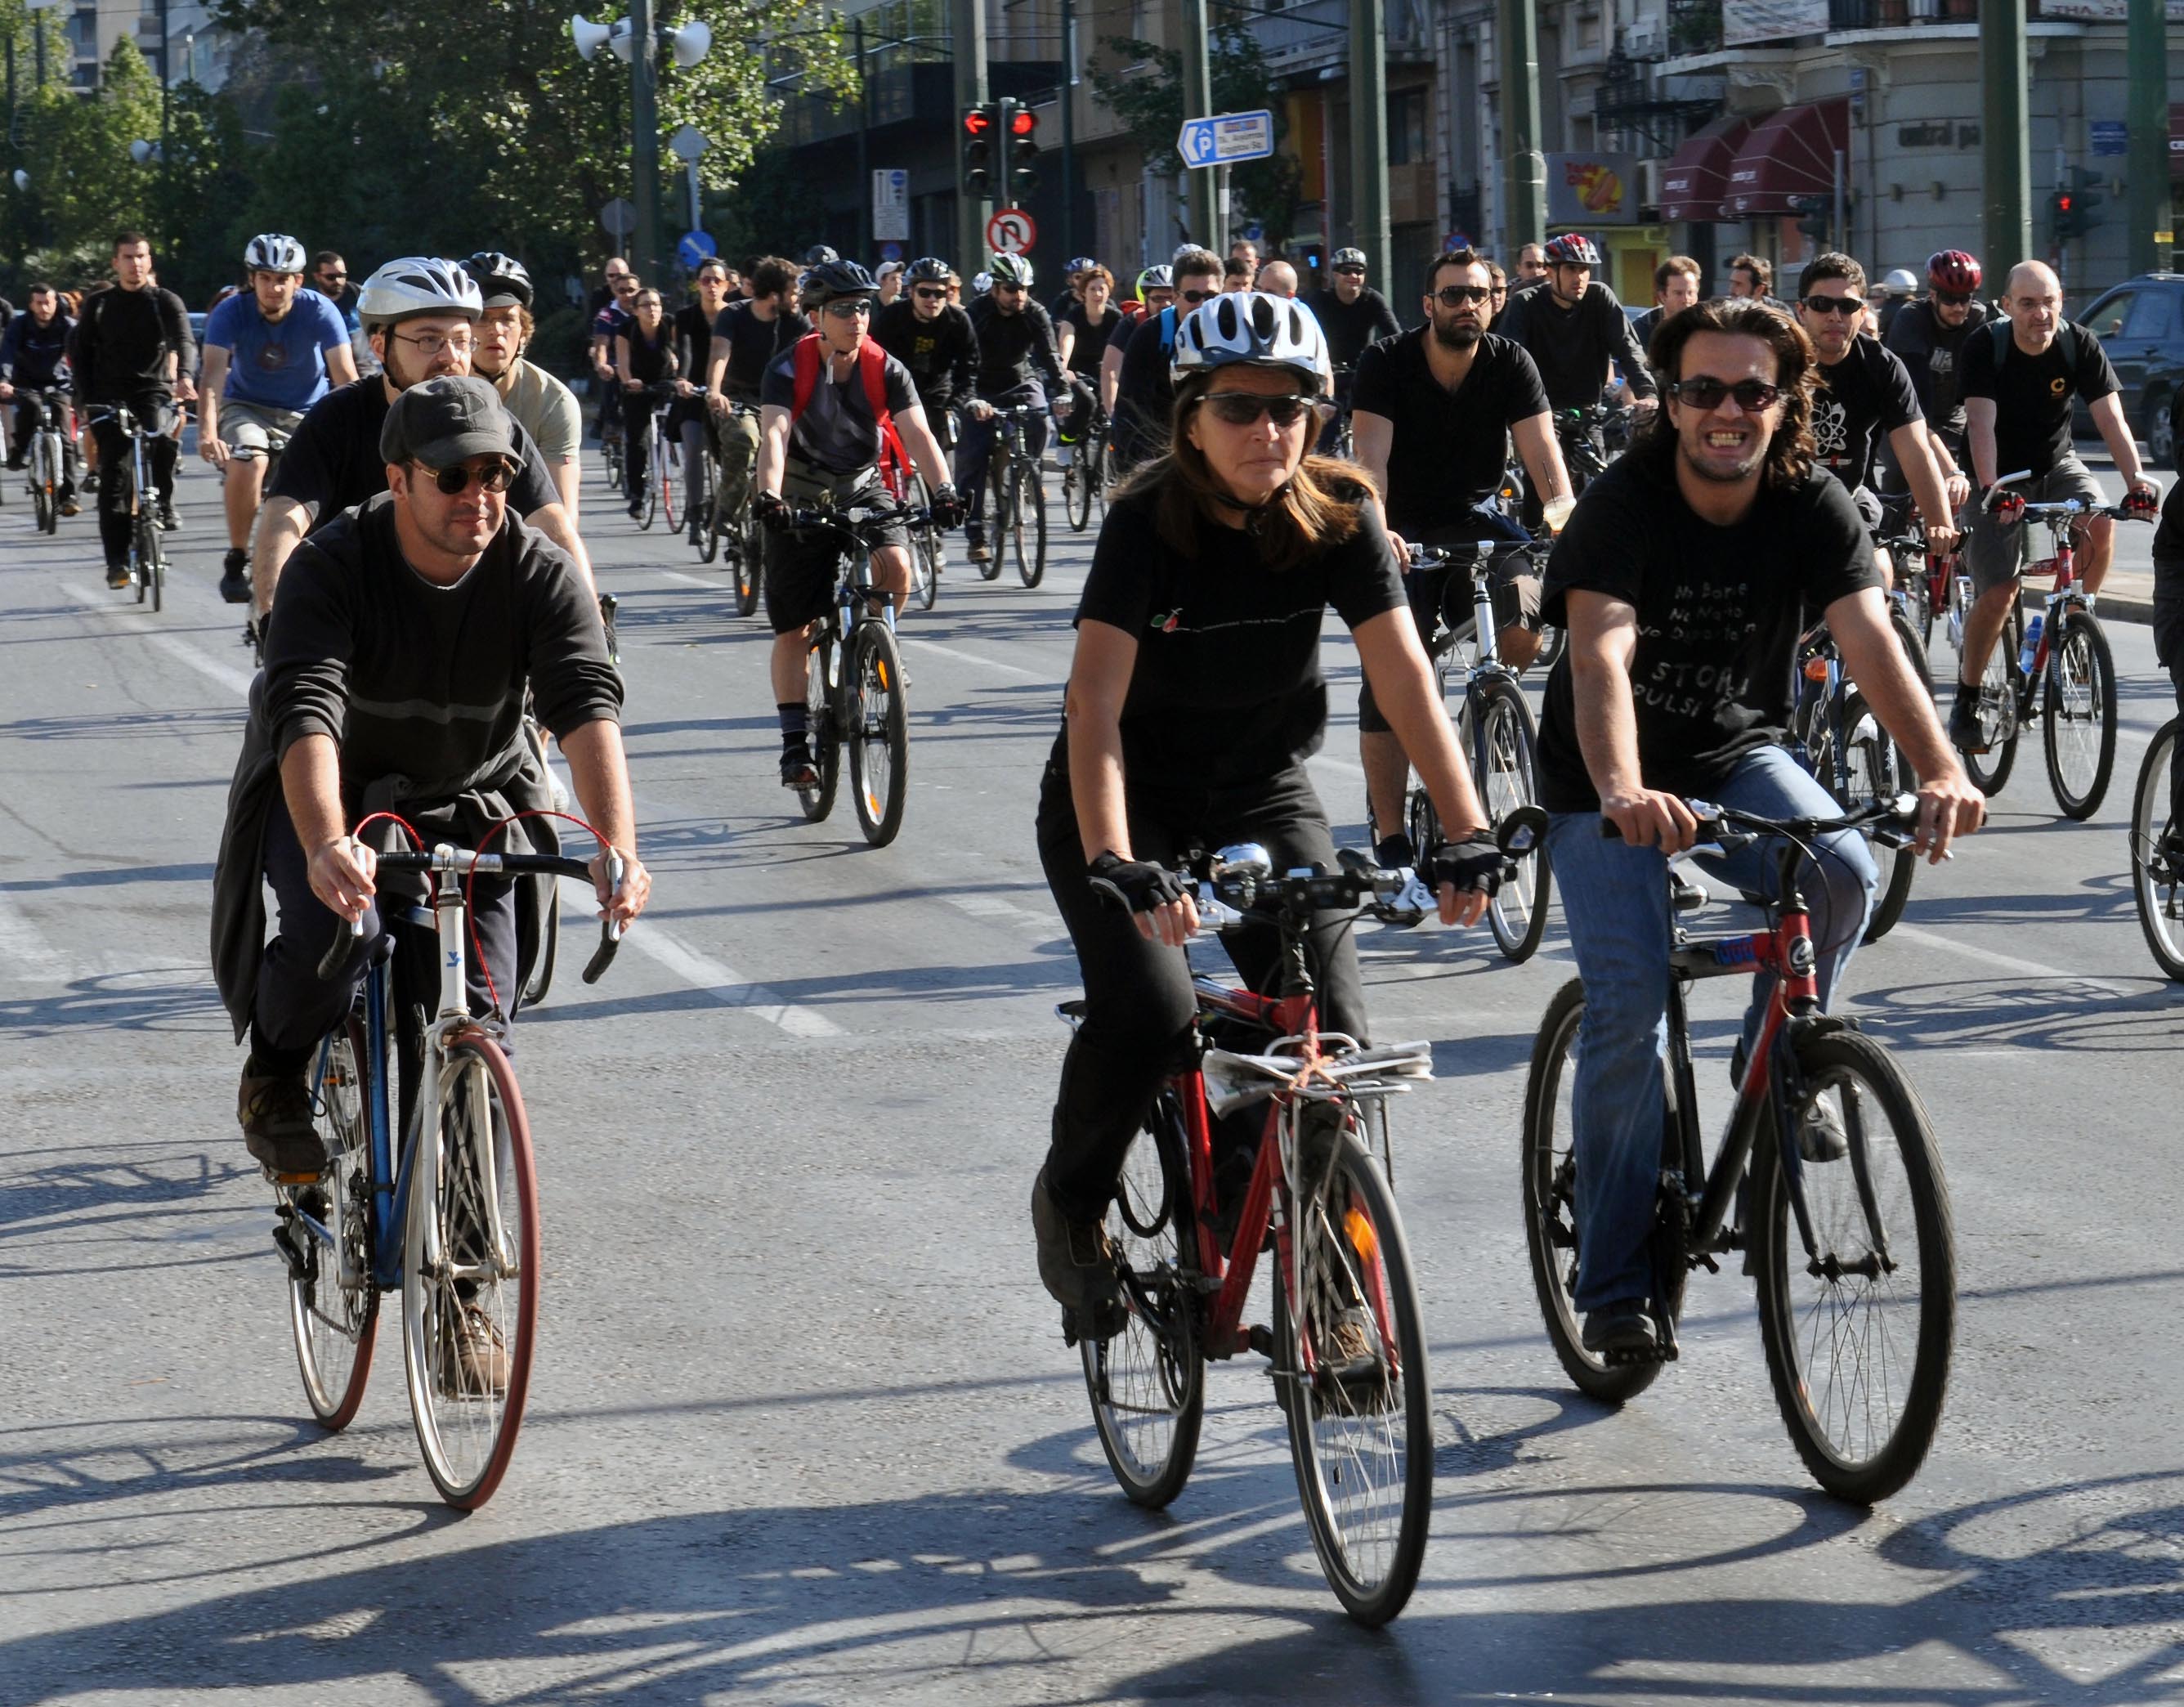 Δωρεάν ποδήλατα σε 4 πόλεις από το υπουργείο Υγείας